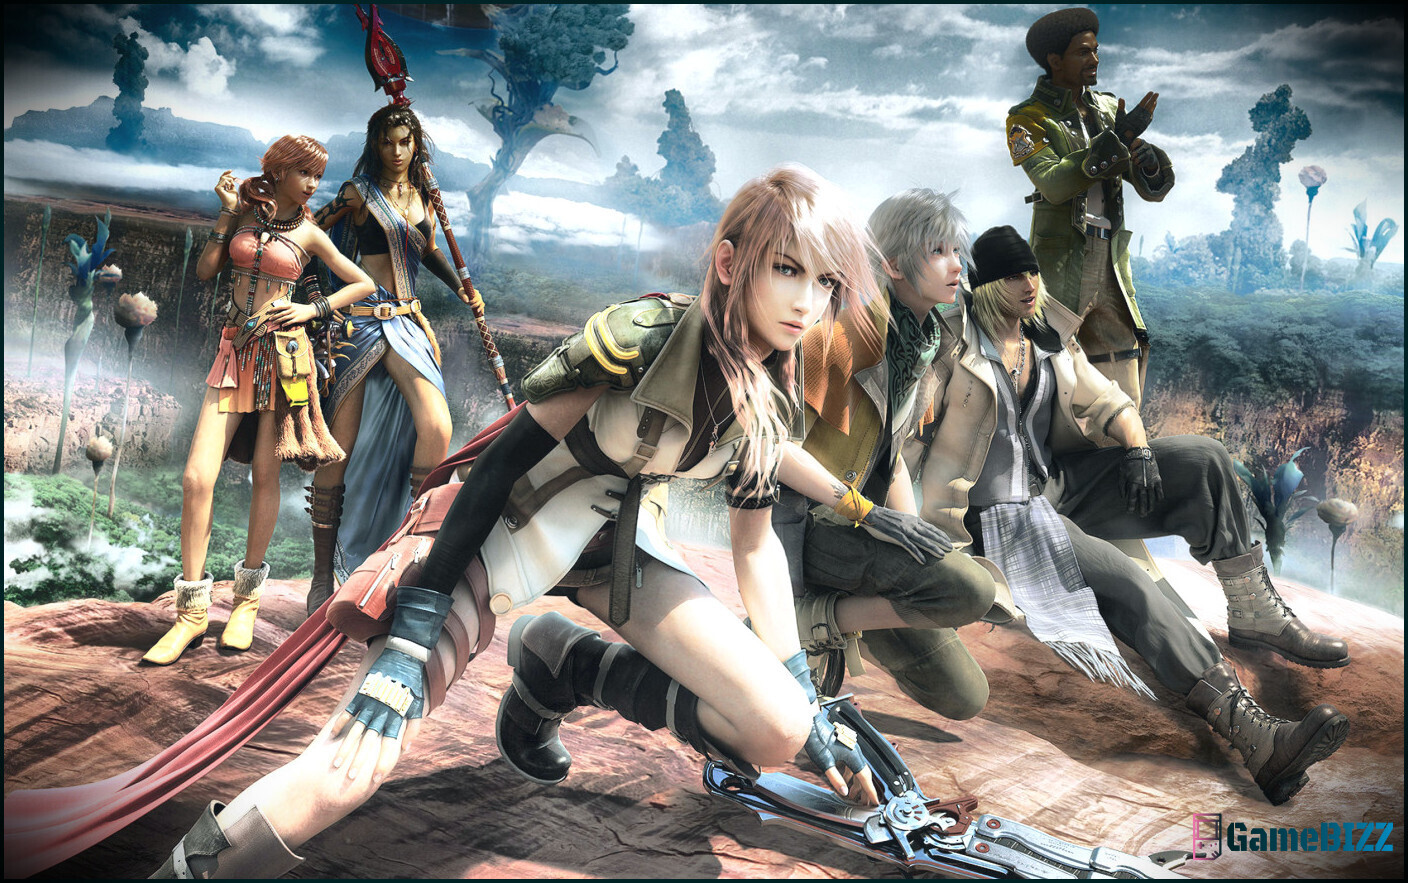 Das Kampfsystem von Final Fantasy 13 erhält nicht annähernd genug Anerkennung